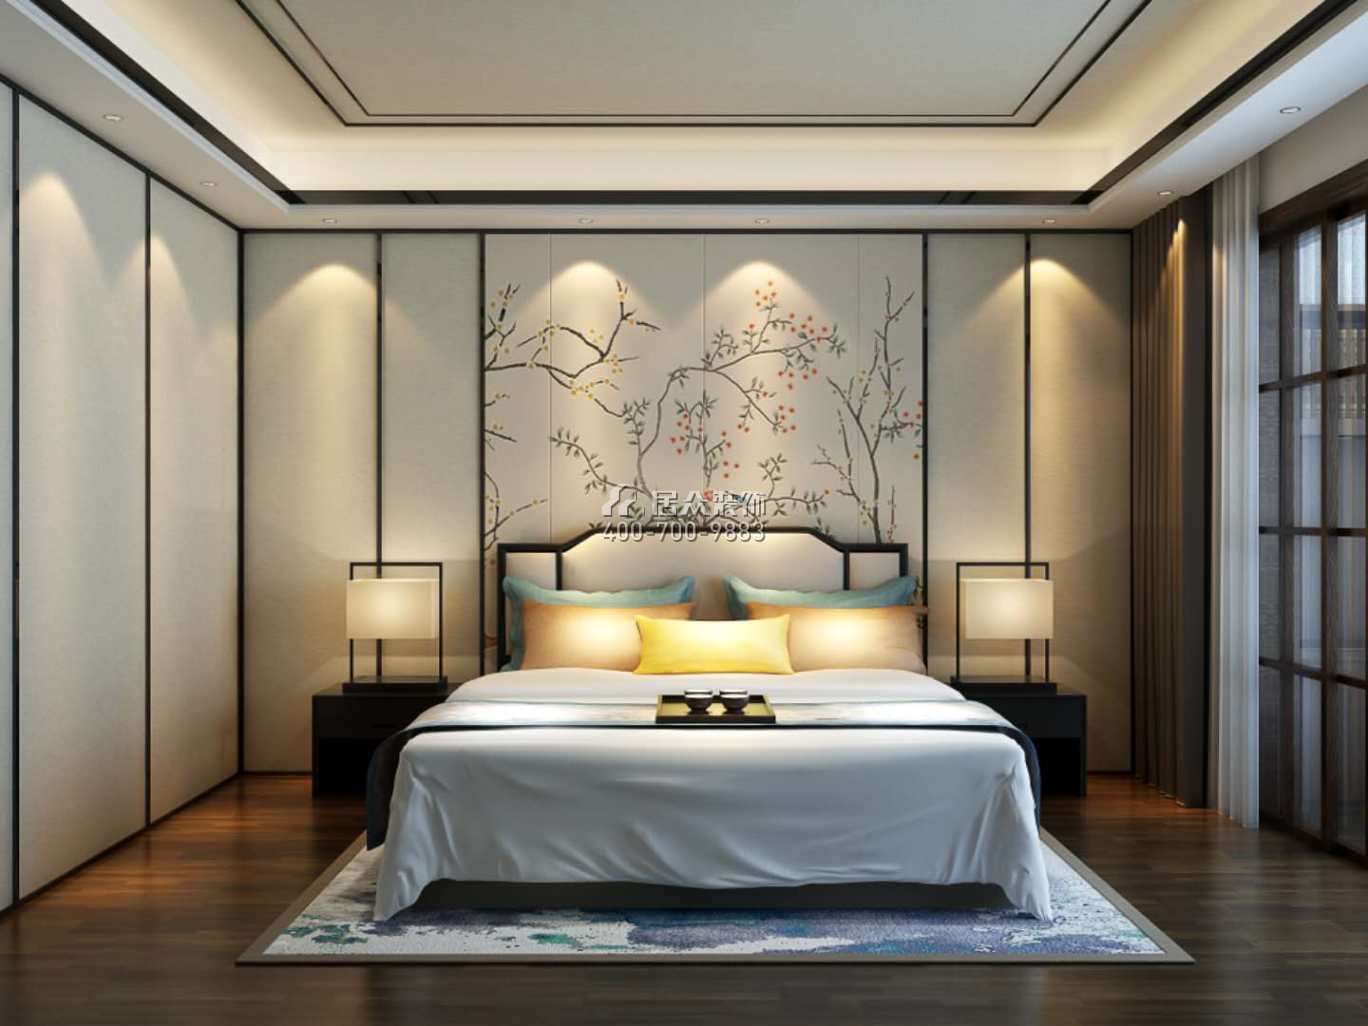 德景园650平方米中式风格别墅户型卧室装修效果图